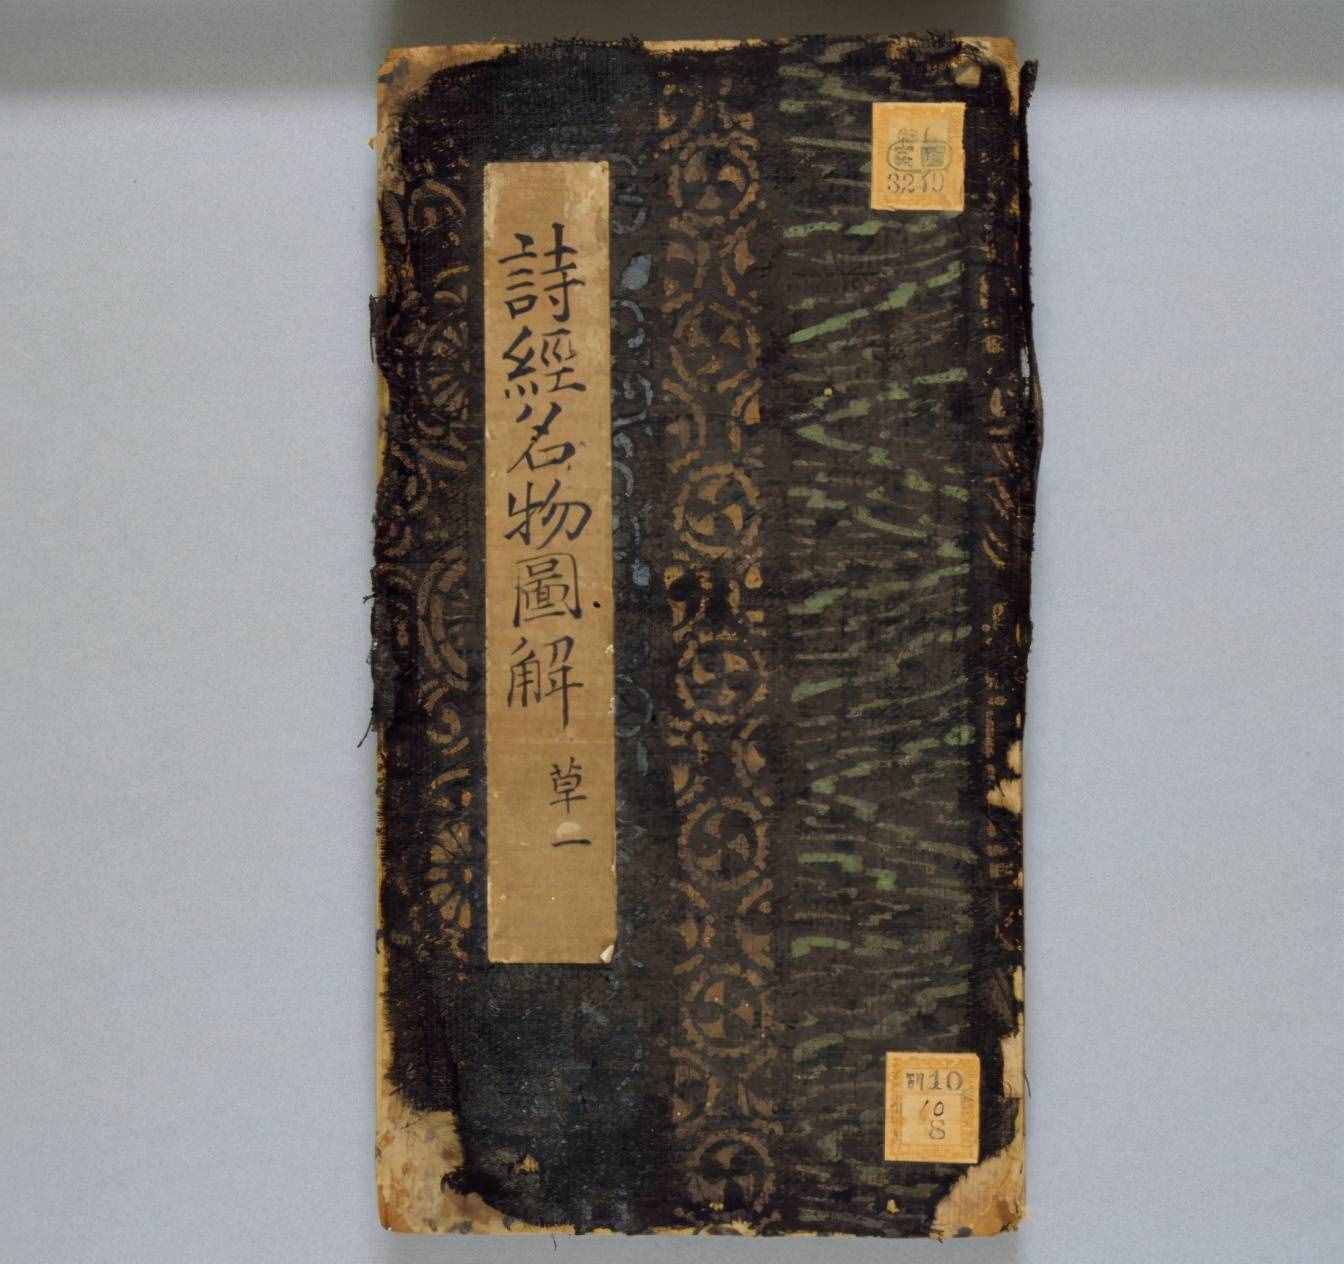 中国文学里最早的《战争与和平》——《诗经·豳风·东山》